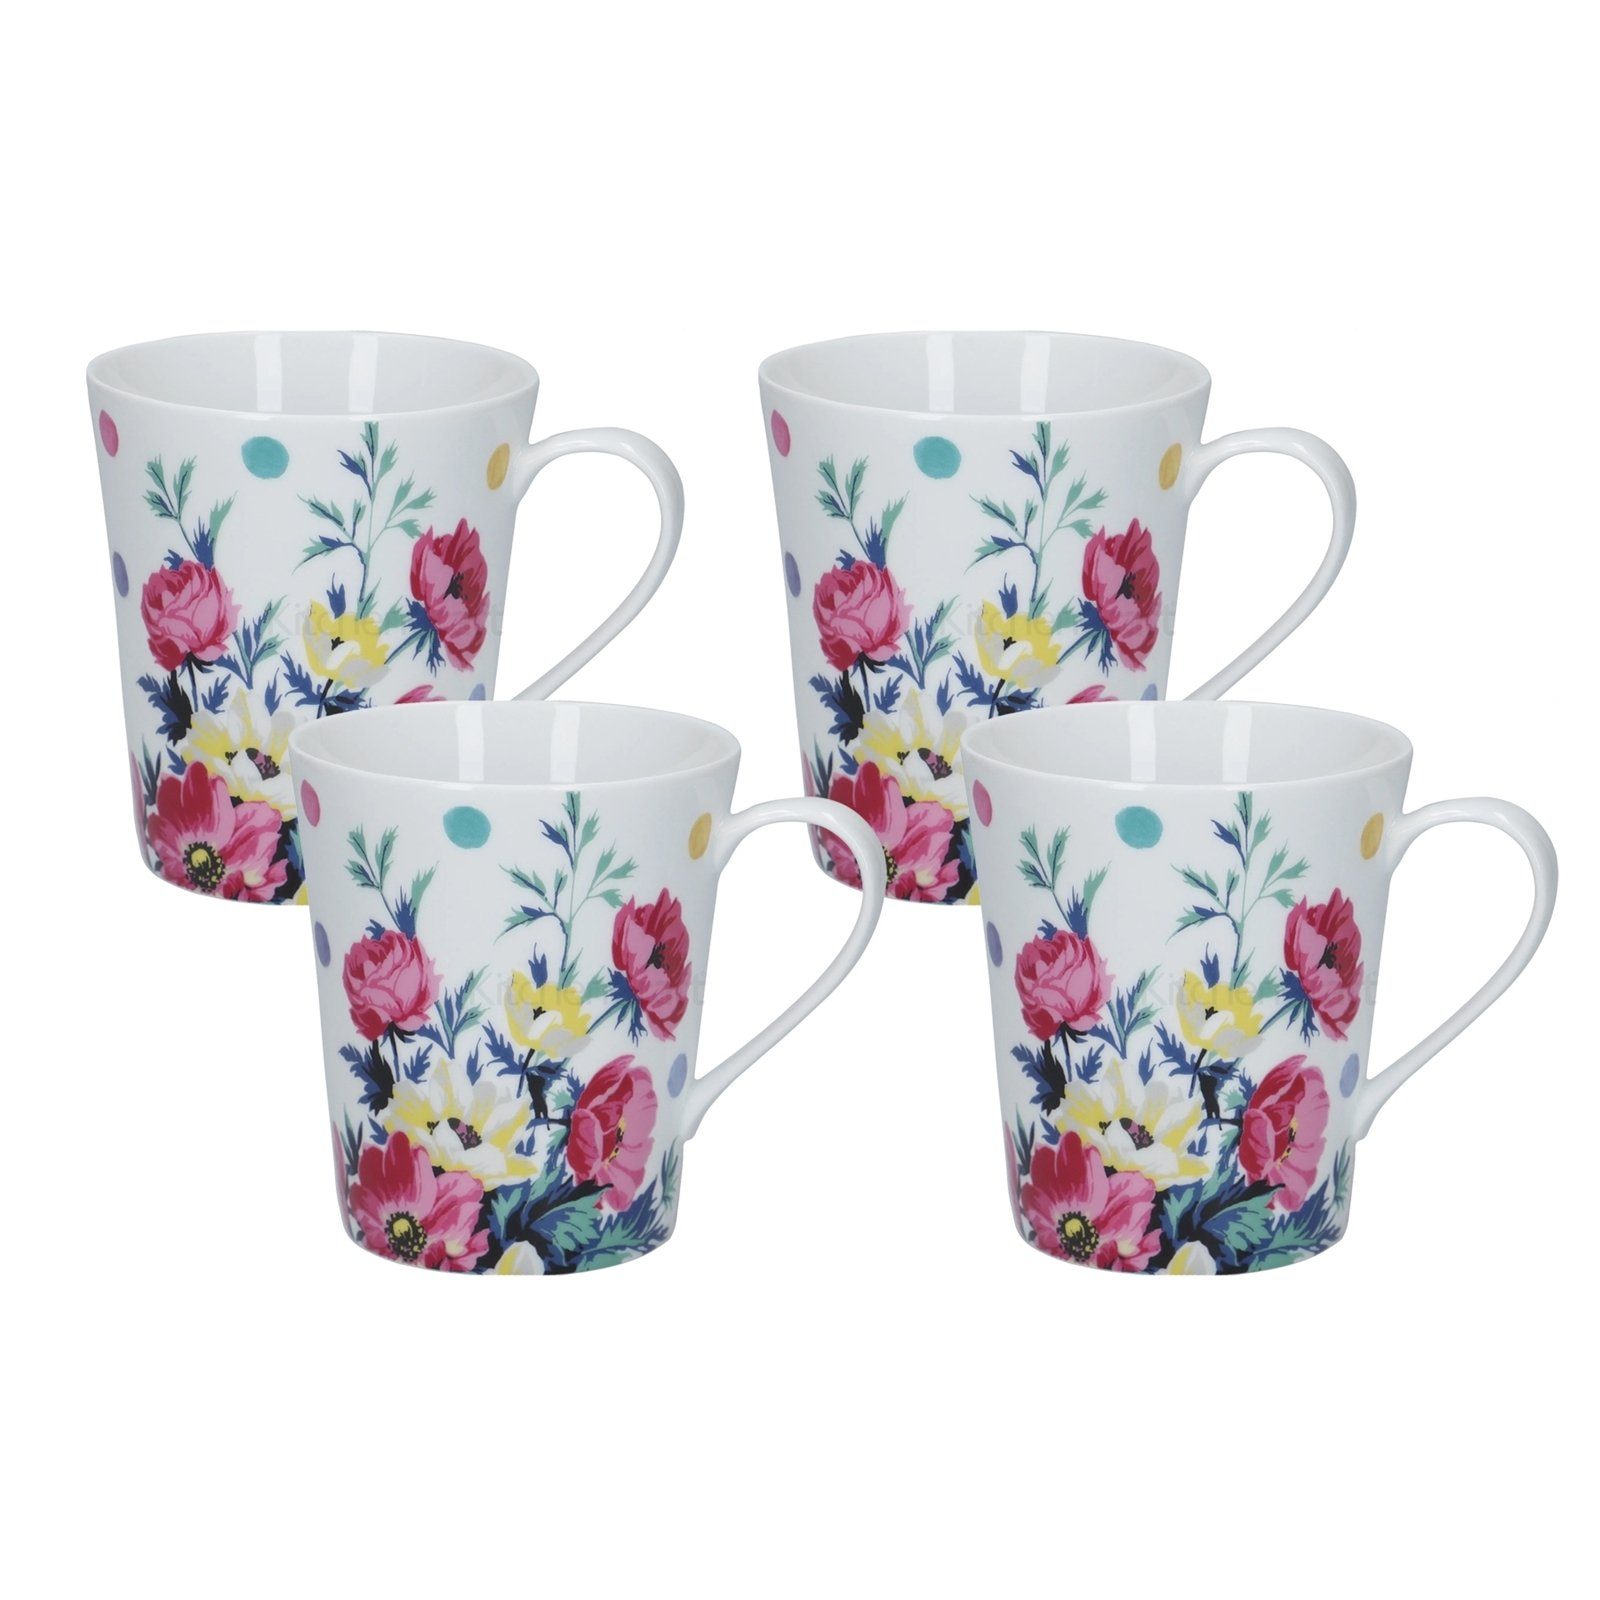 Neuetischkultur Tasse Kaffeetasse Porzellan Blumendekor 4er-Set Mikasa, Porzellan, Kaffeebecher Blume Bunt Weiß